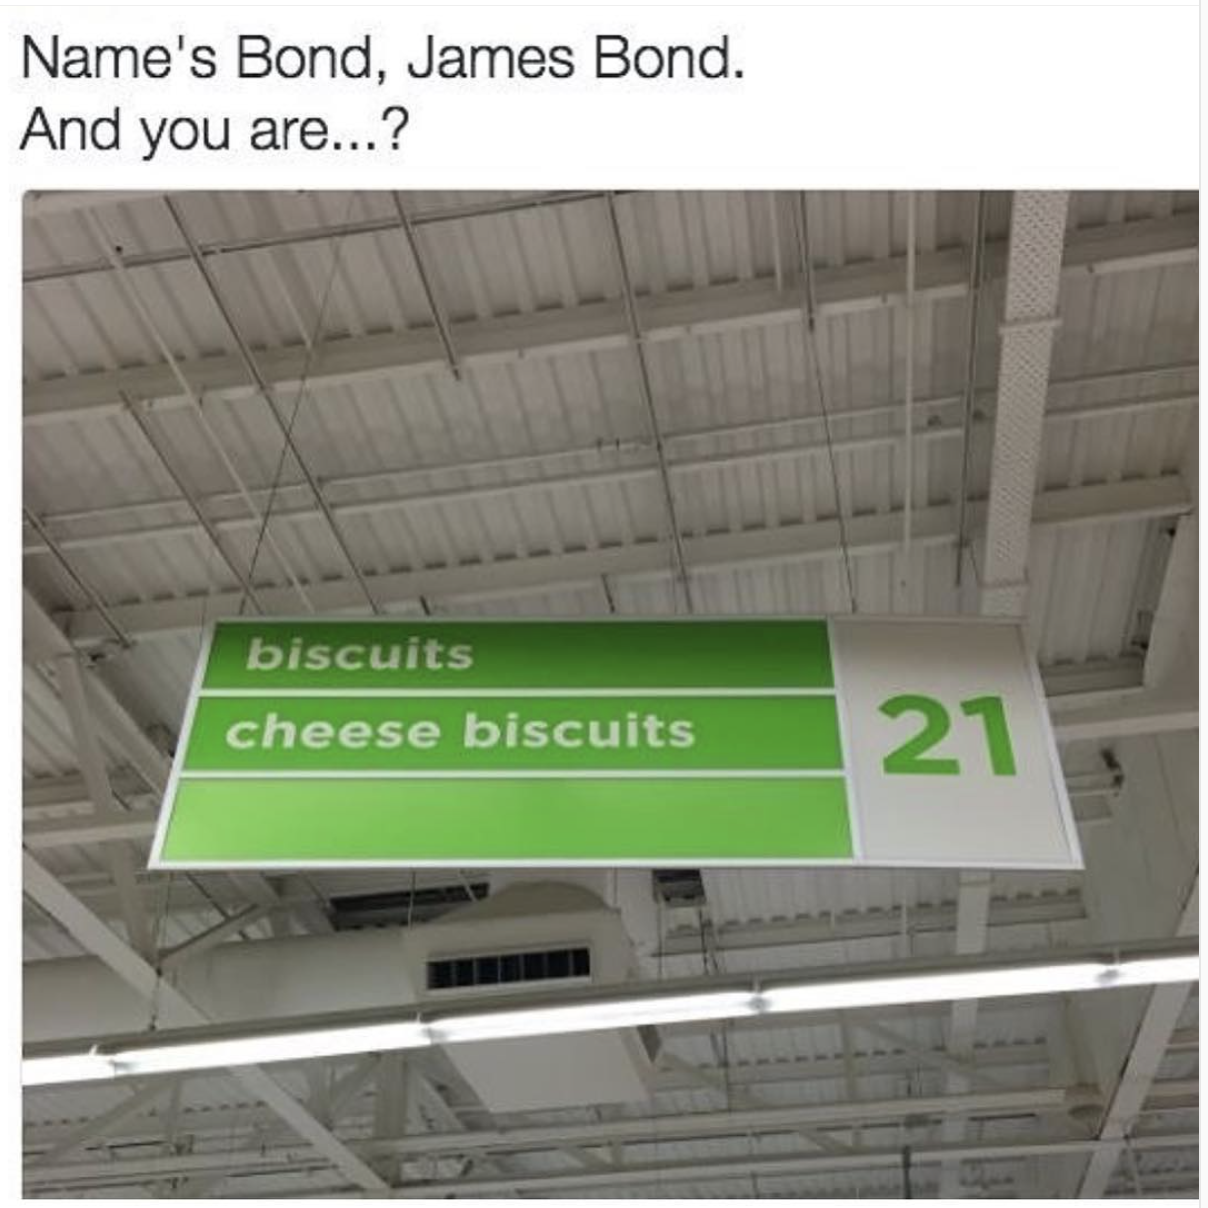 memes - name's bond james bond and you - Name's Bond, James Bond. And you are...? biscuits cheese biscuits 21